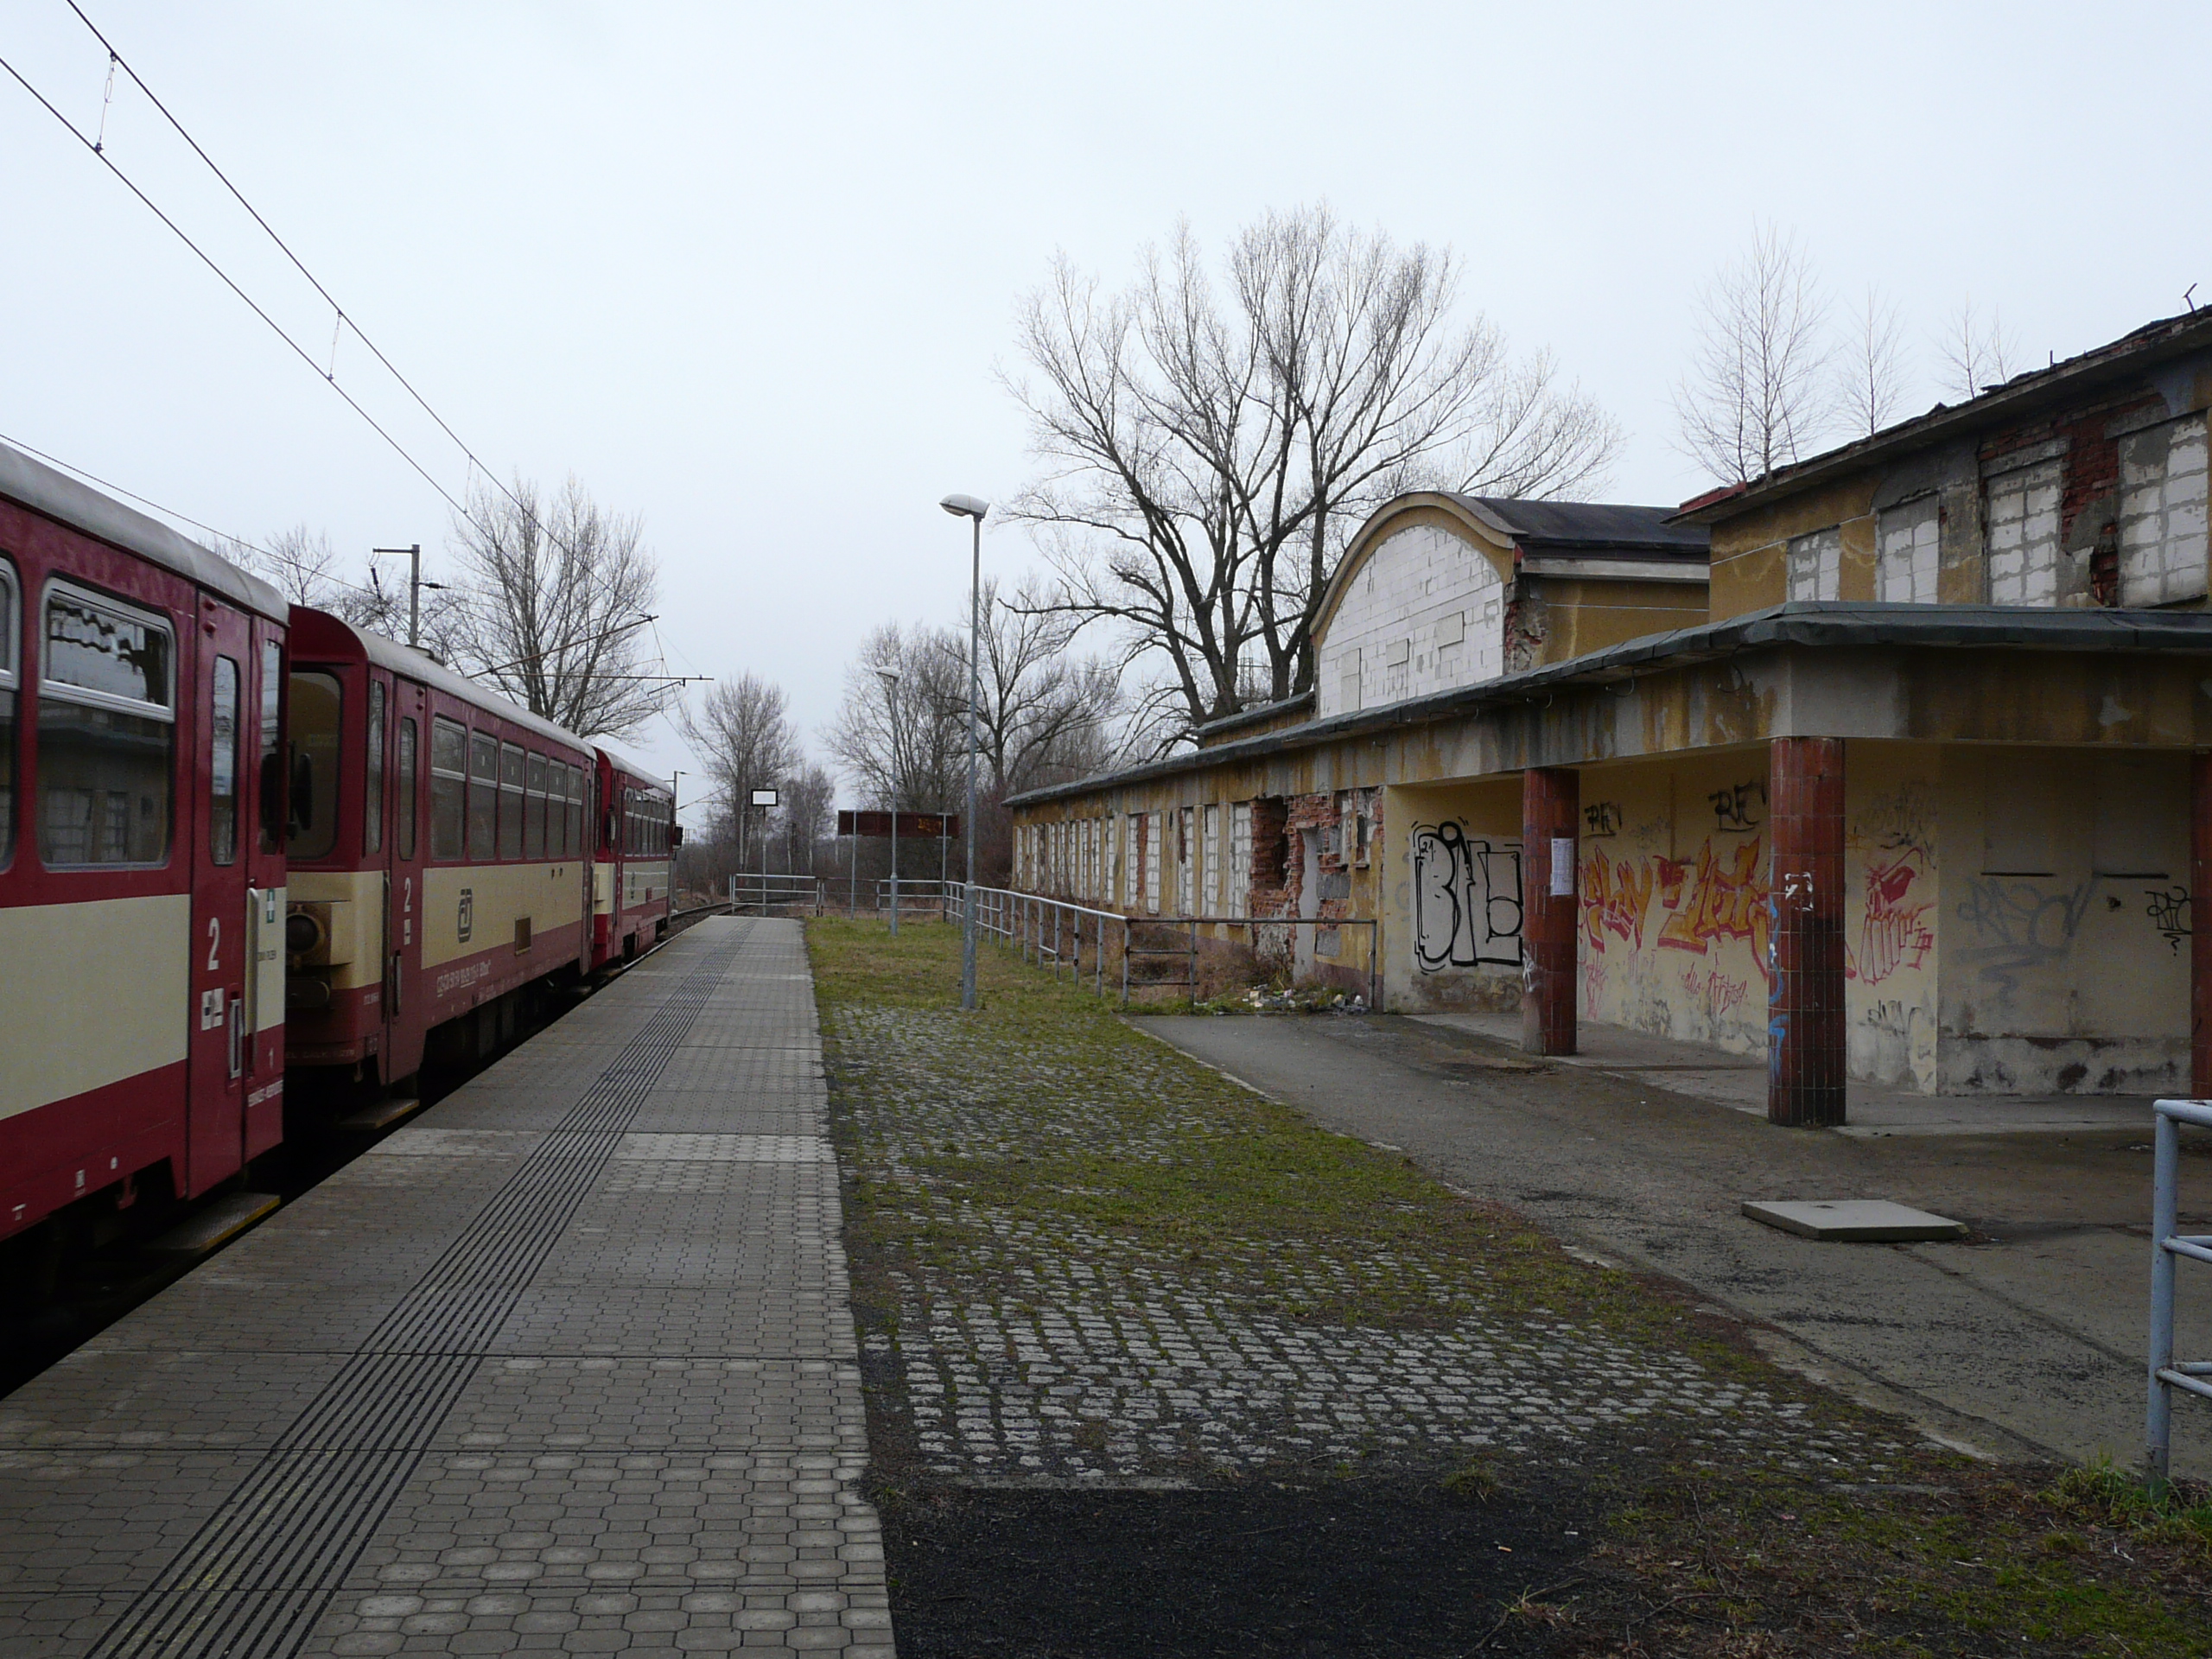 Csehországban is találhatóak romos megállók, de ennél rosszabbat nem láttunk<br>(fotó: Farkas Zsolt)